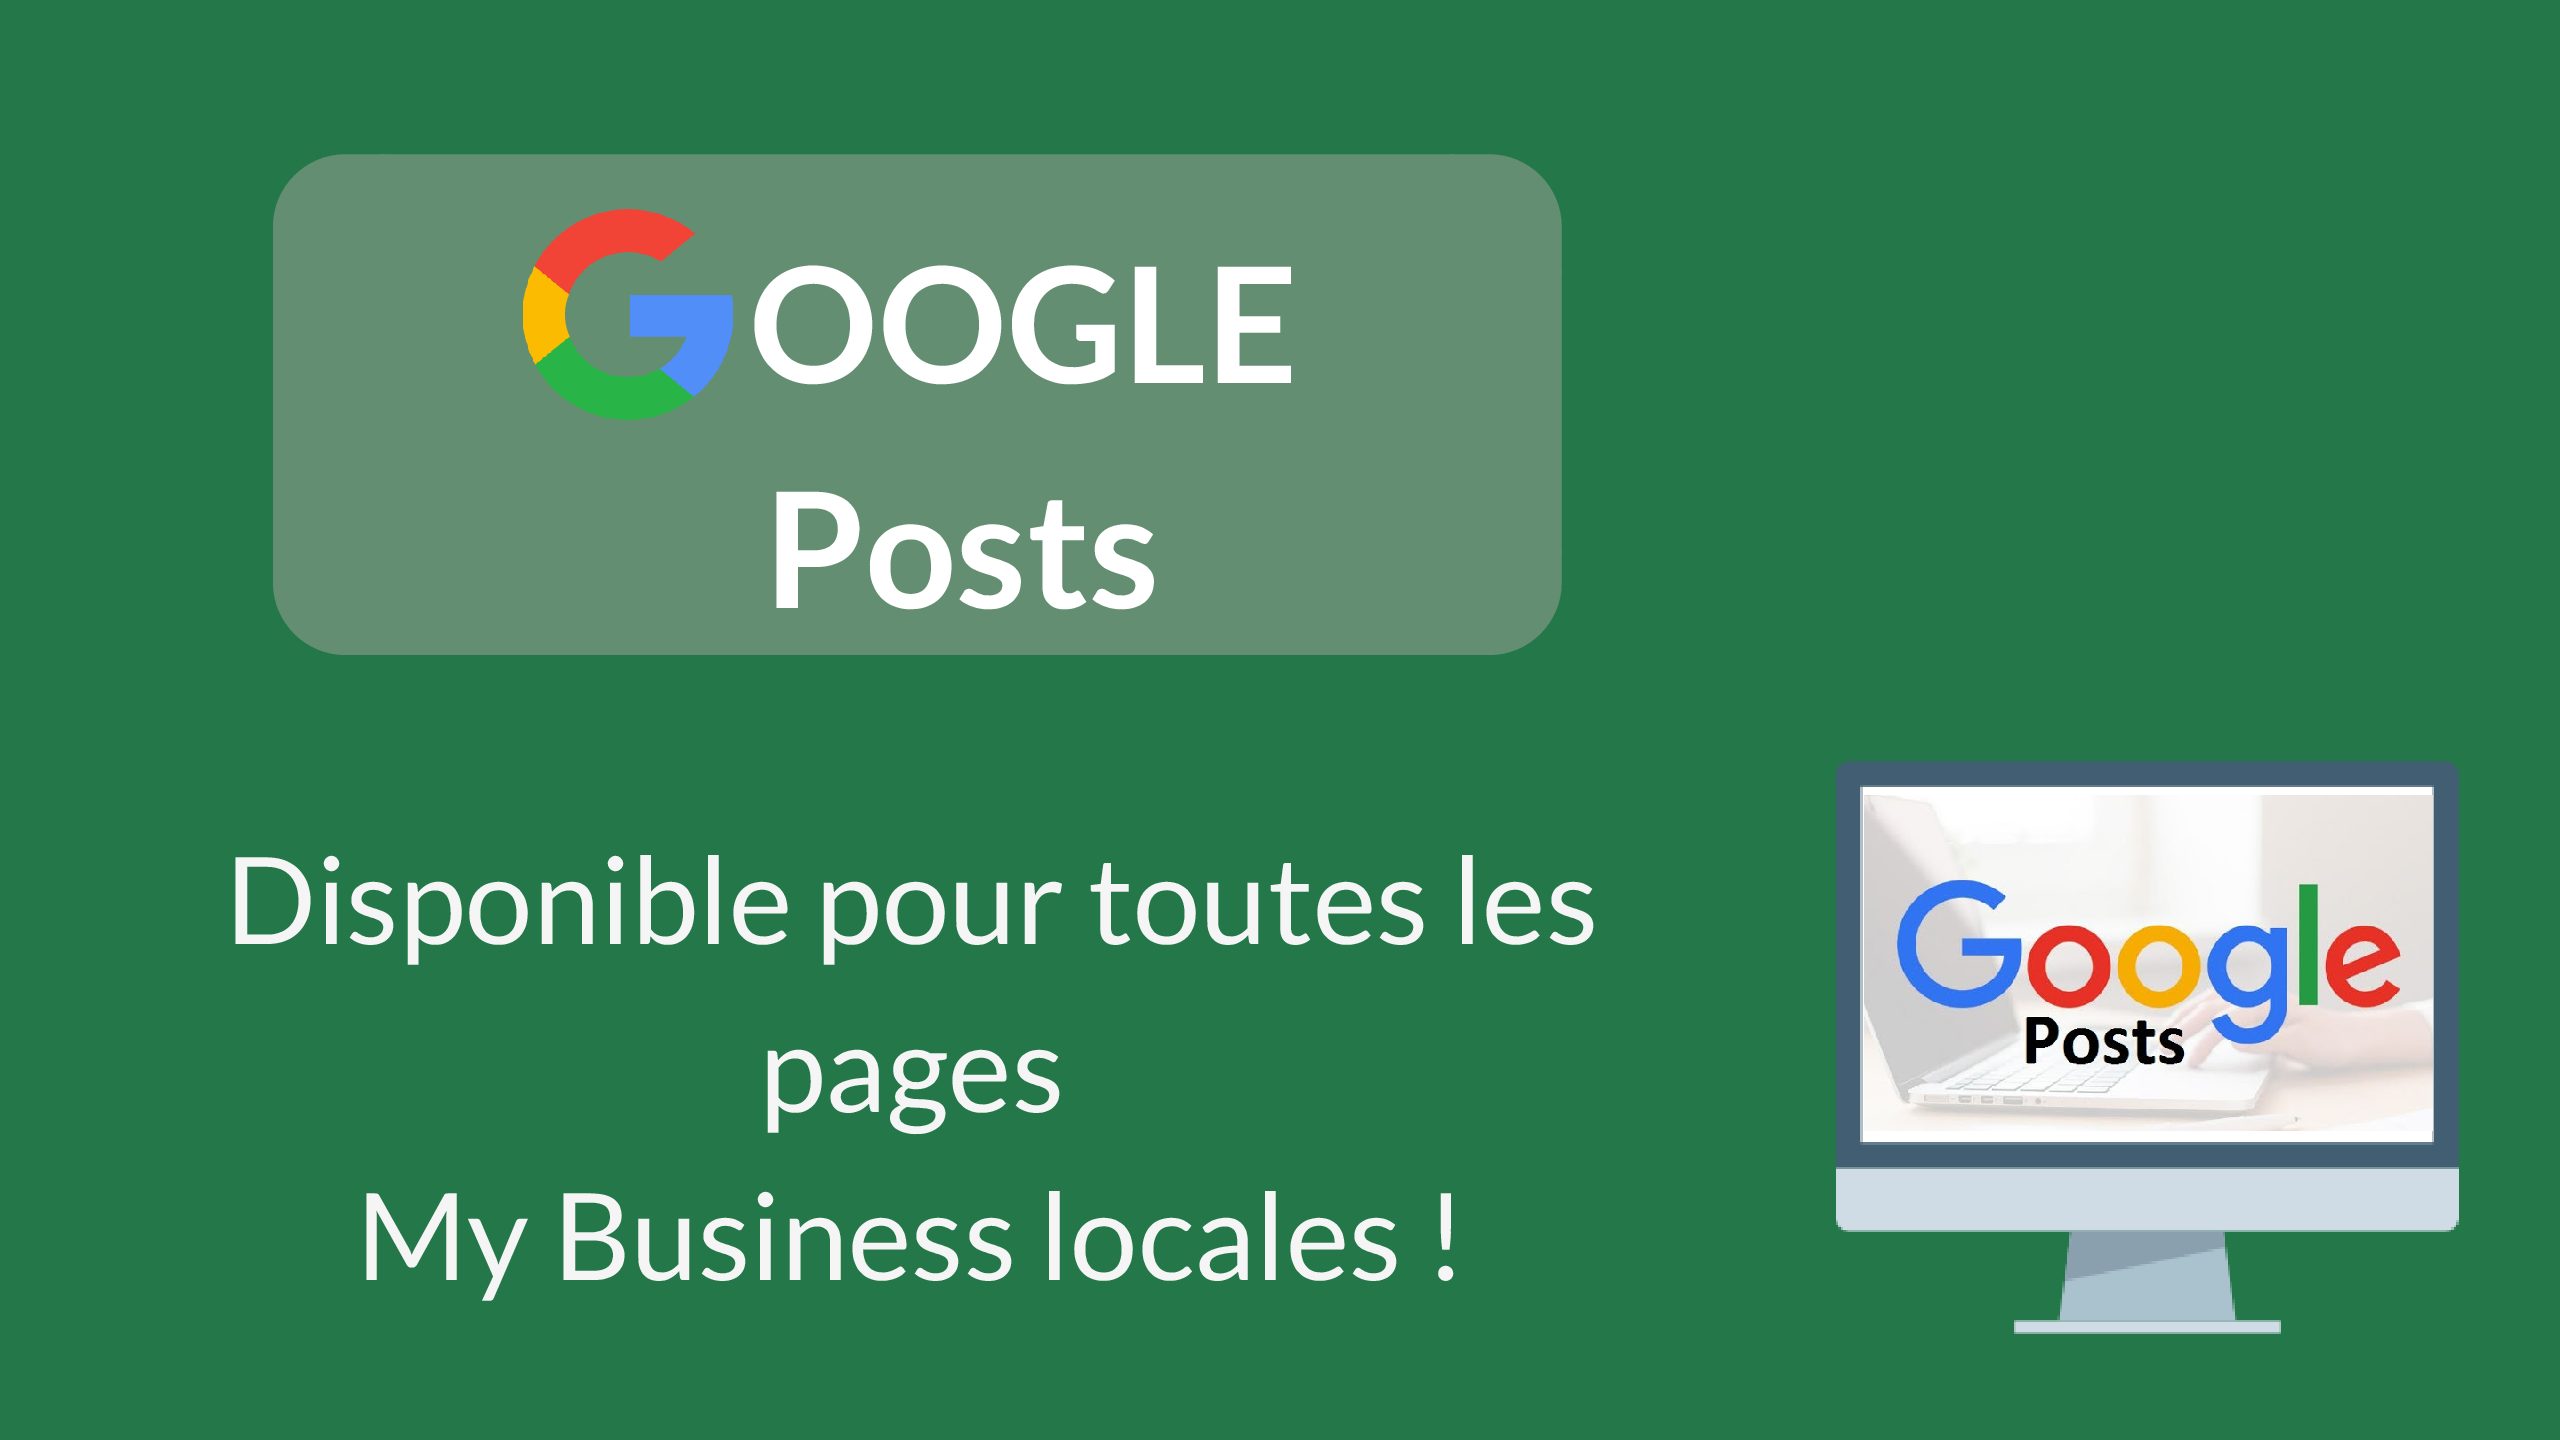 Google Posts enfin disponible pour toutes les entreprises locales My Business !